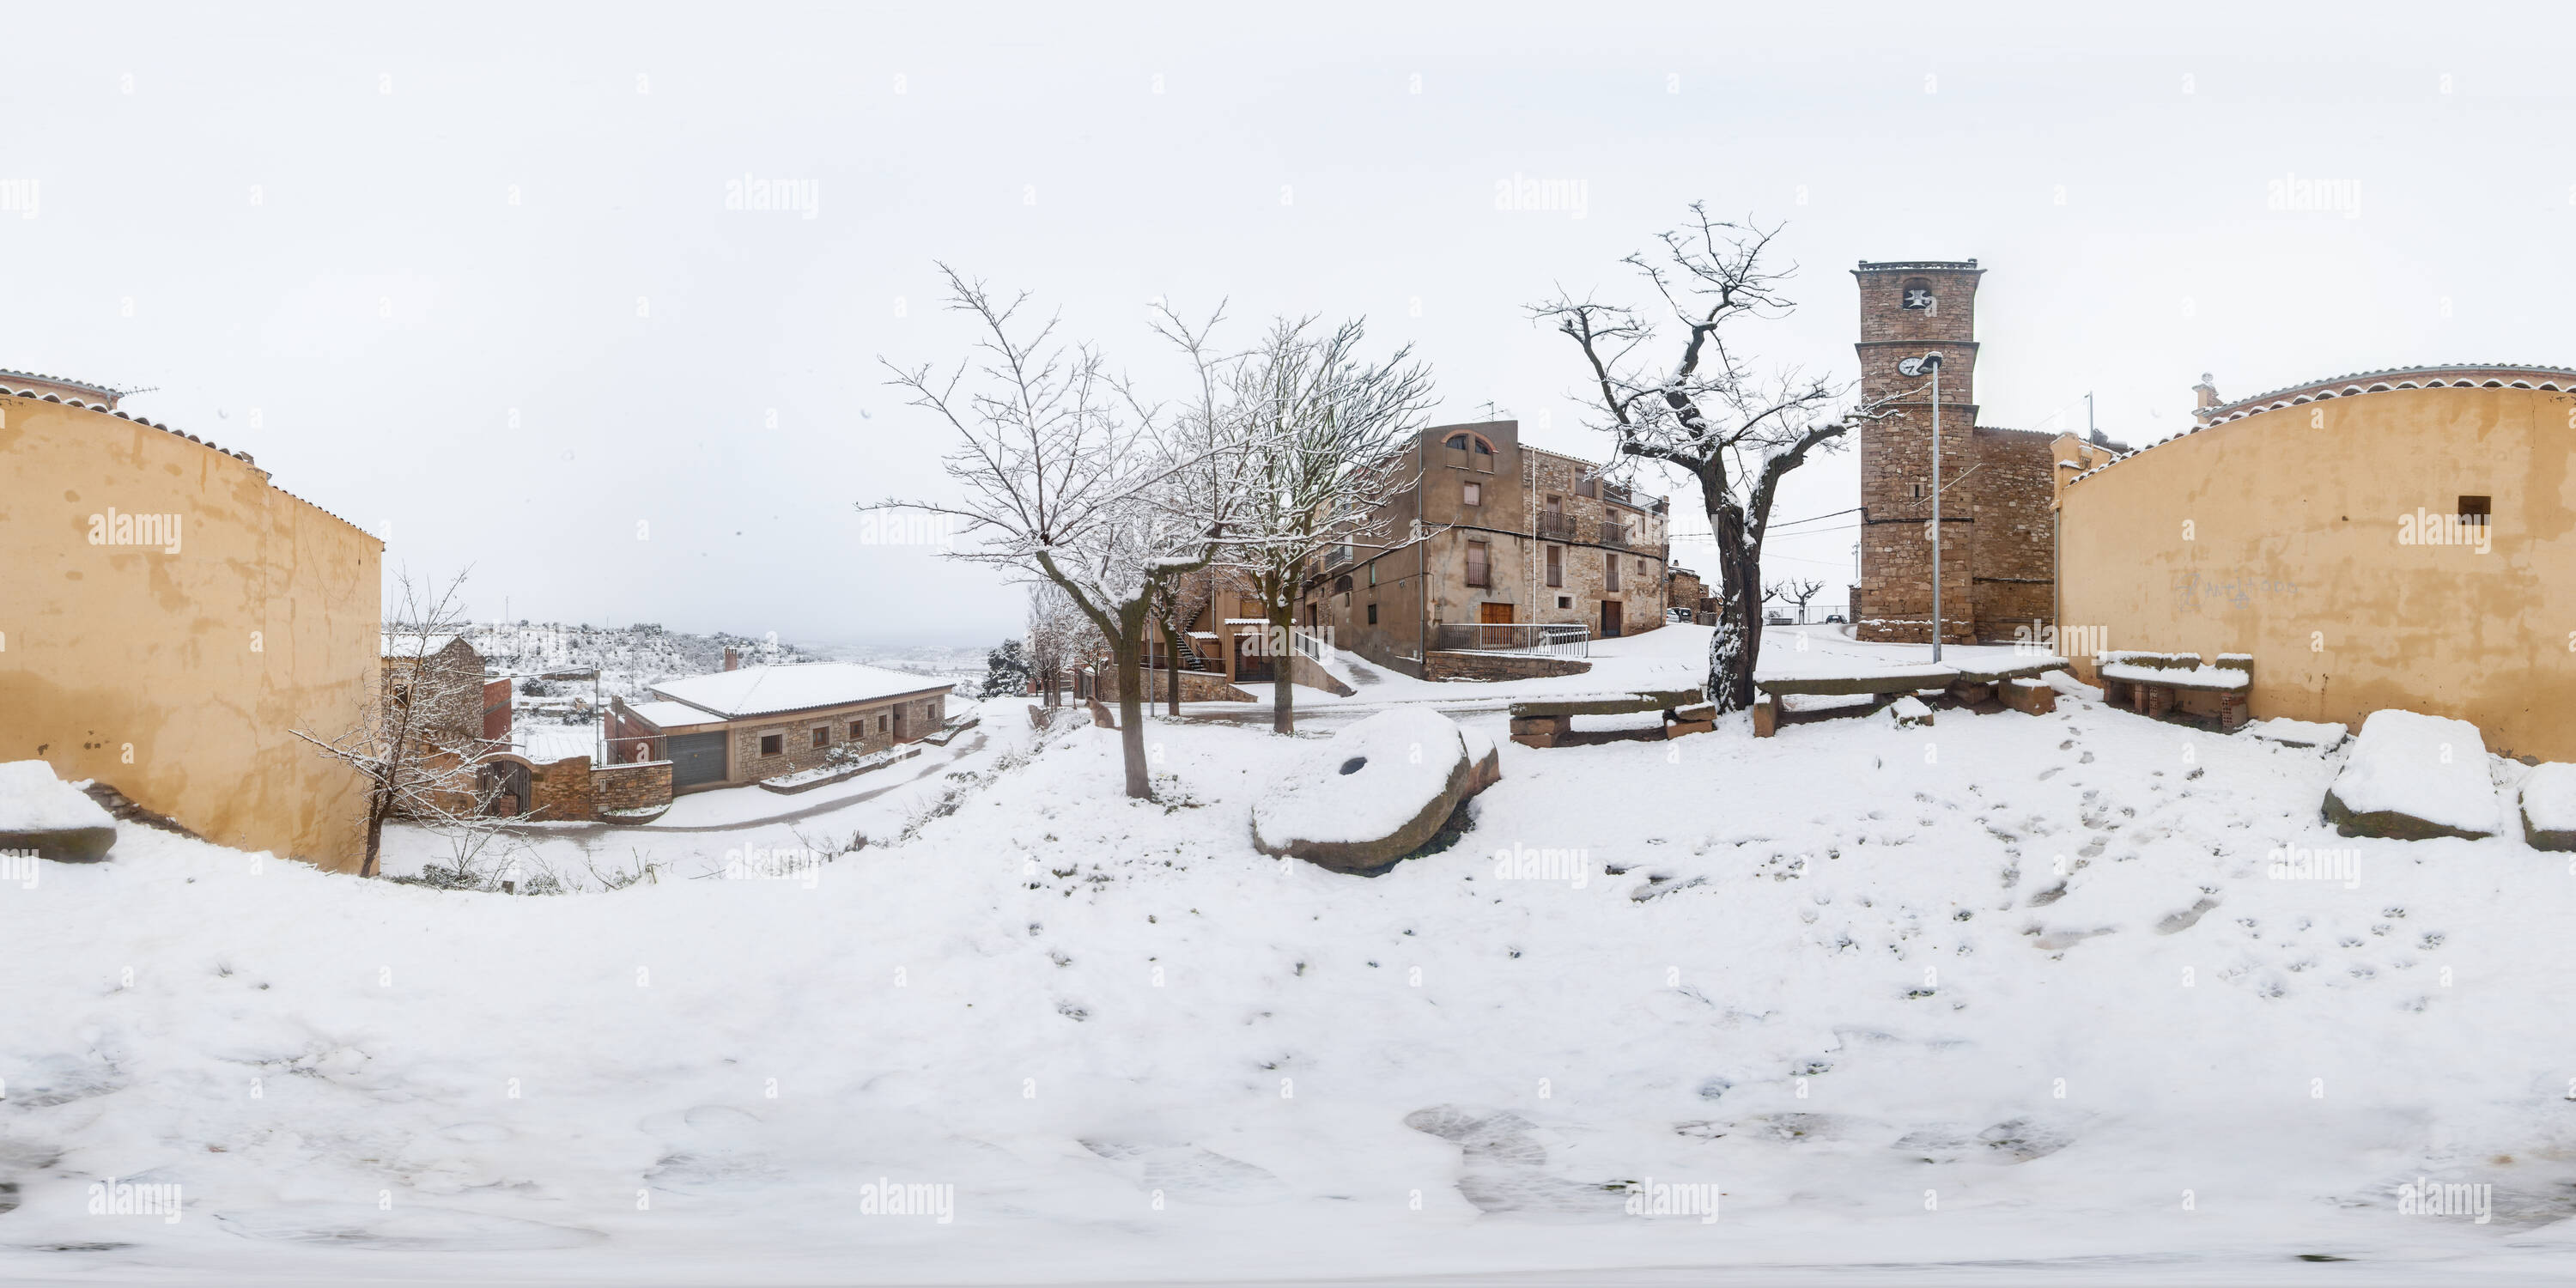 Vista panorámica en 360 grados de Nalec campanar nevada2016